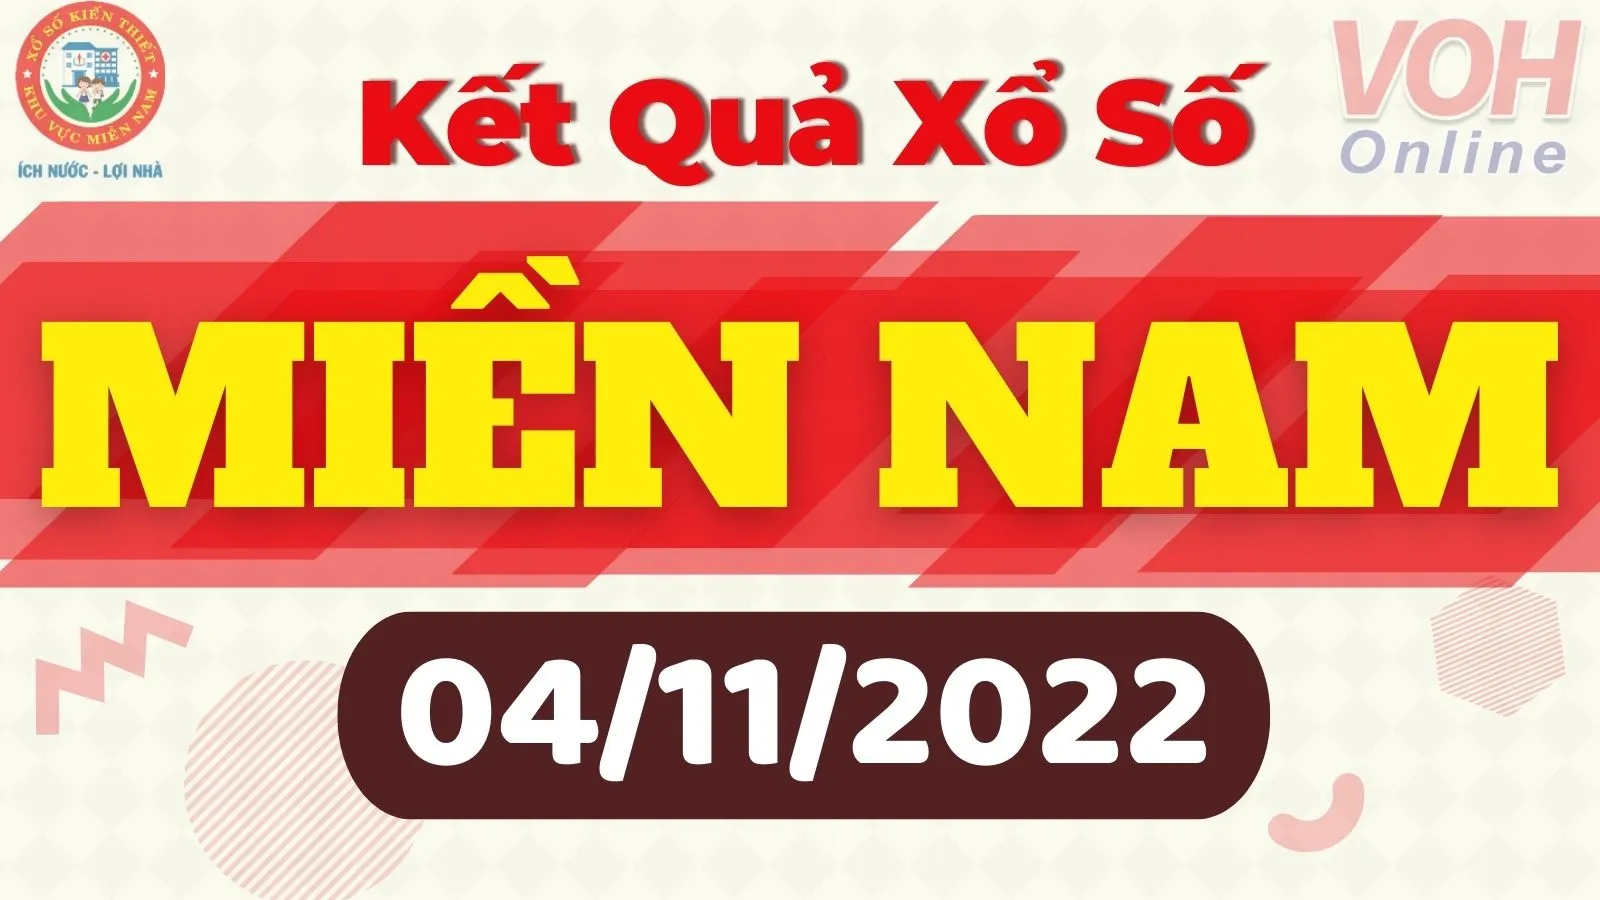 Xổ số miền Nam hôm nay - XSMN 4/11 - SXMN 4/11/2022 - Kết quả xổ số hôm nay ngày 4 tháng 11